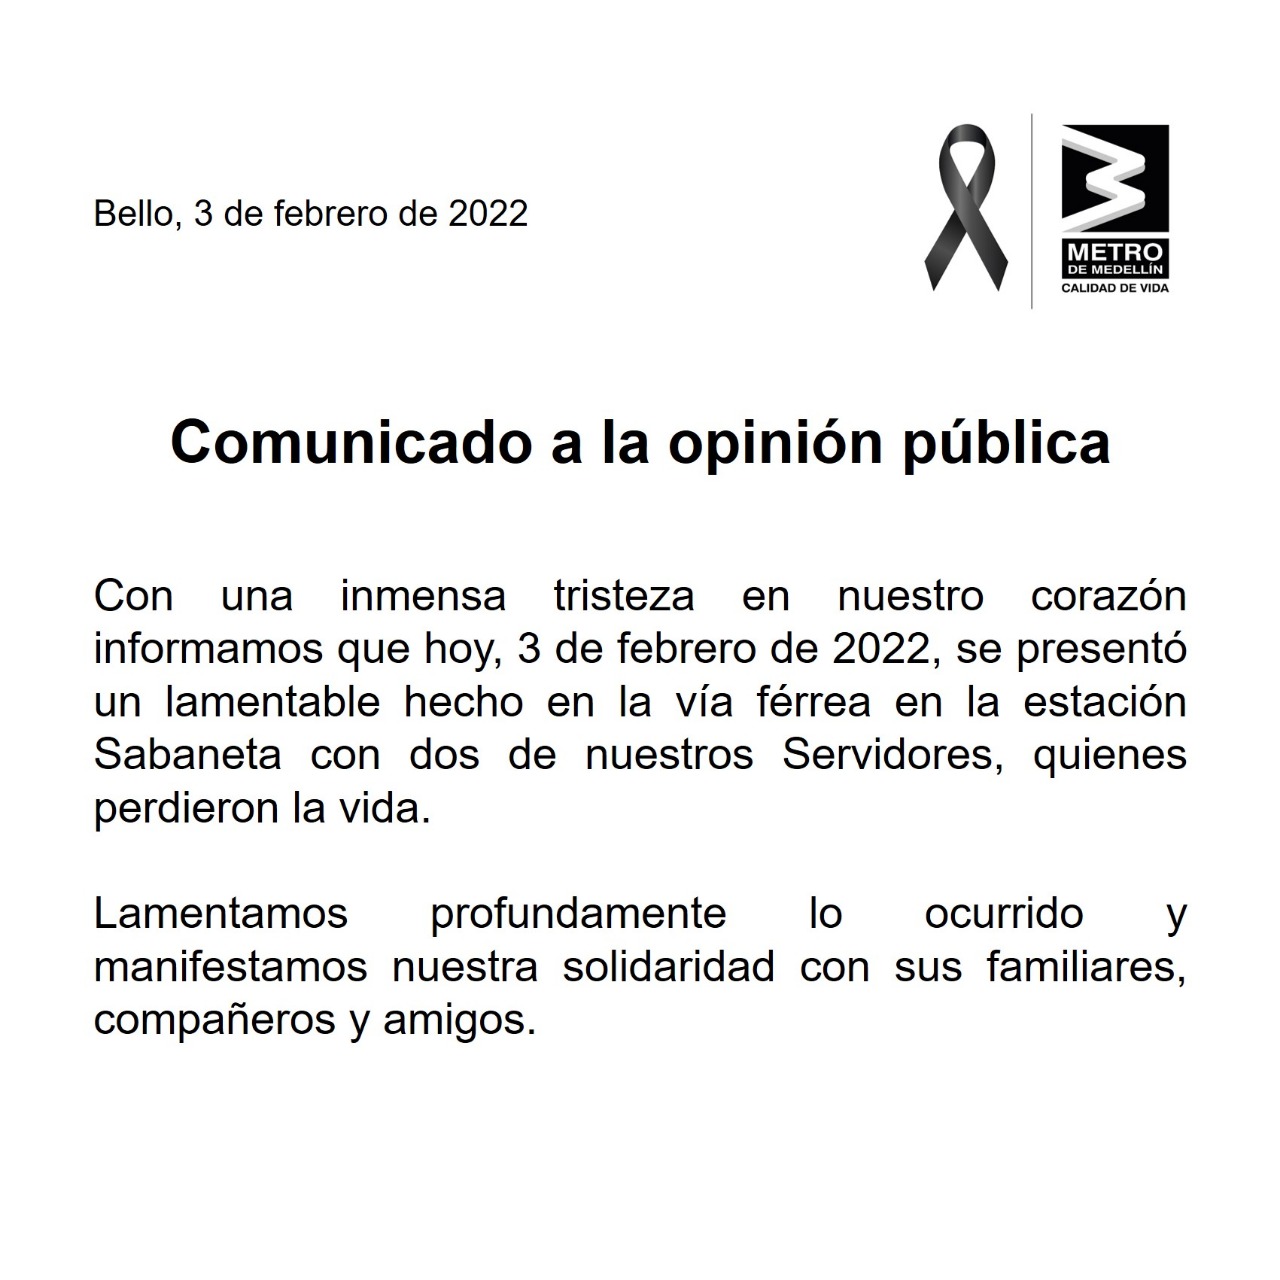 Este es el comunicado por parte del Metro de Medellín tras lo ocurrido.